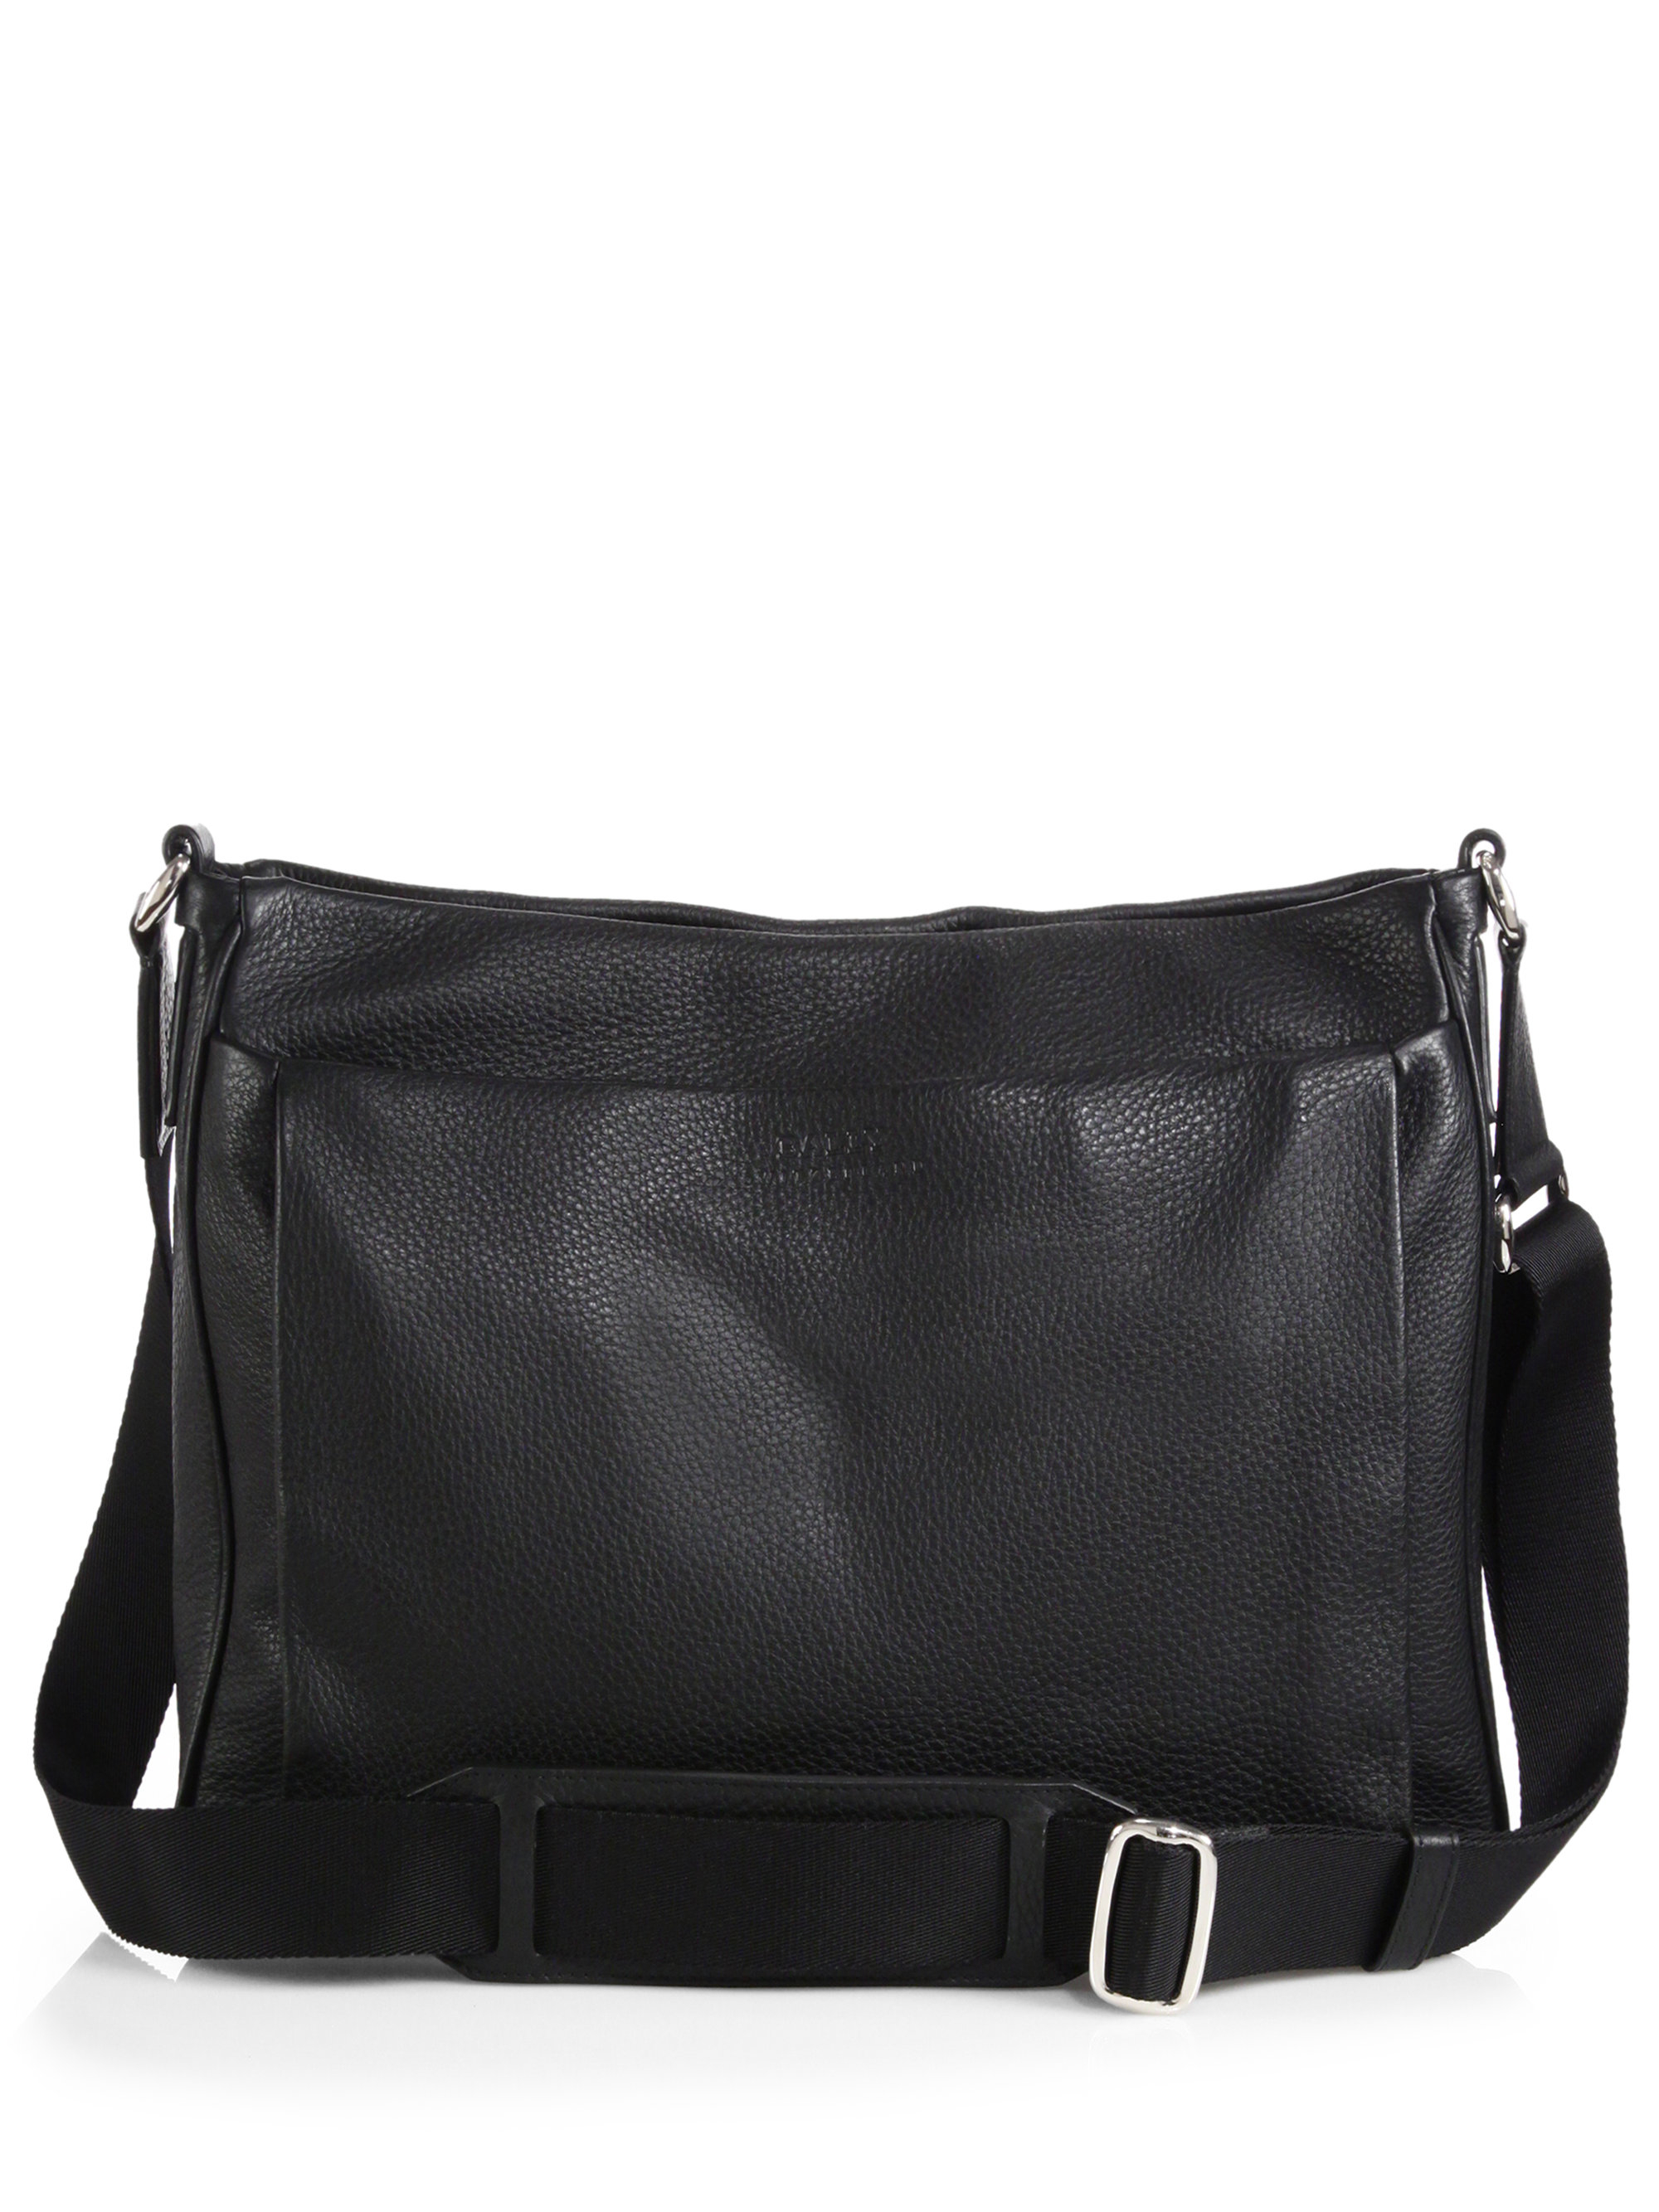 Lyst - Bally Grained Calfskin Leather Messenger Bag in Black for Men